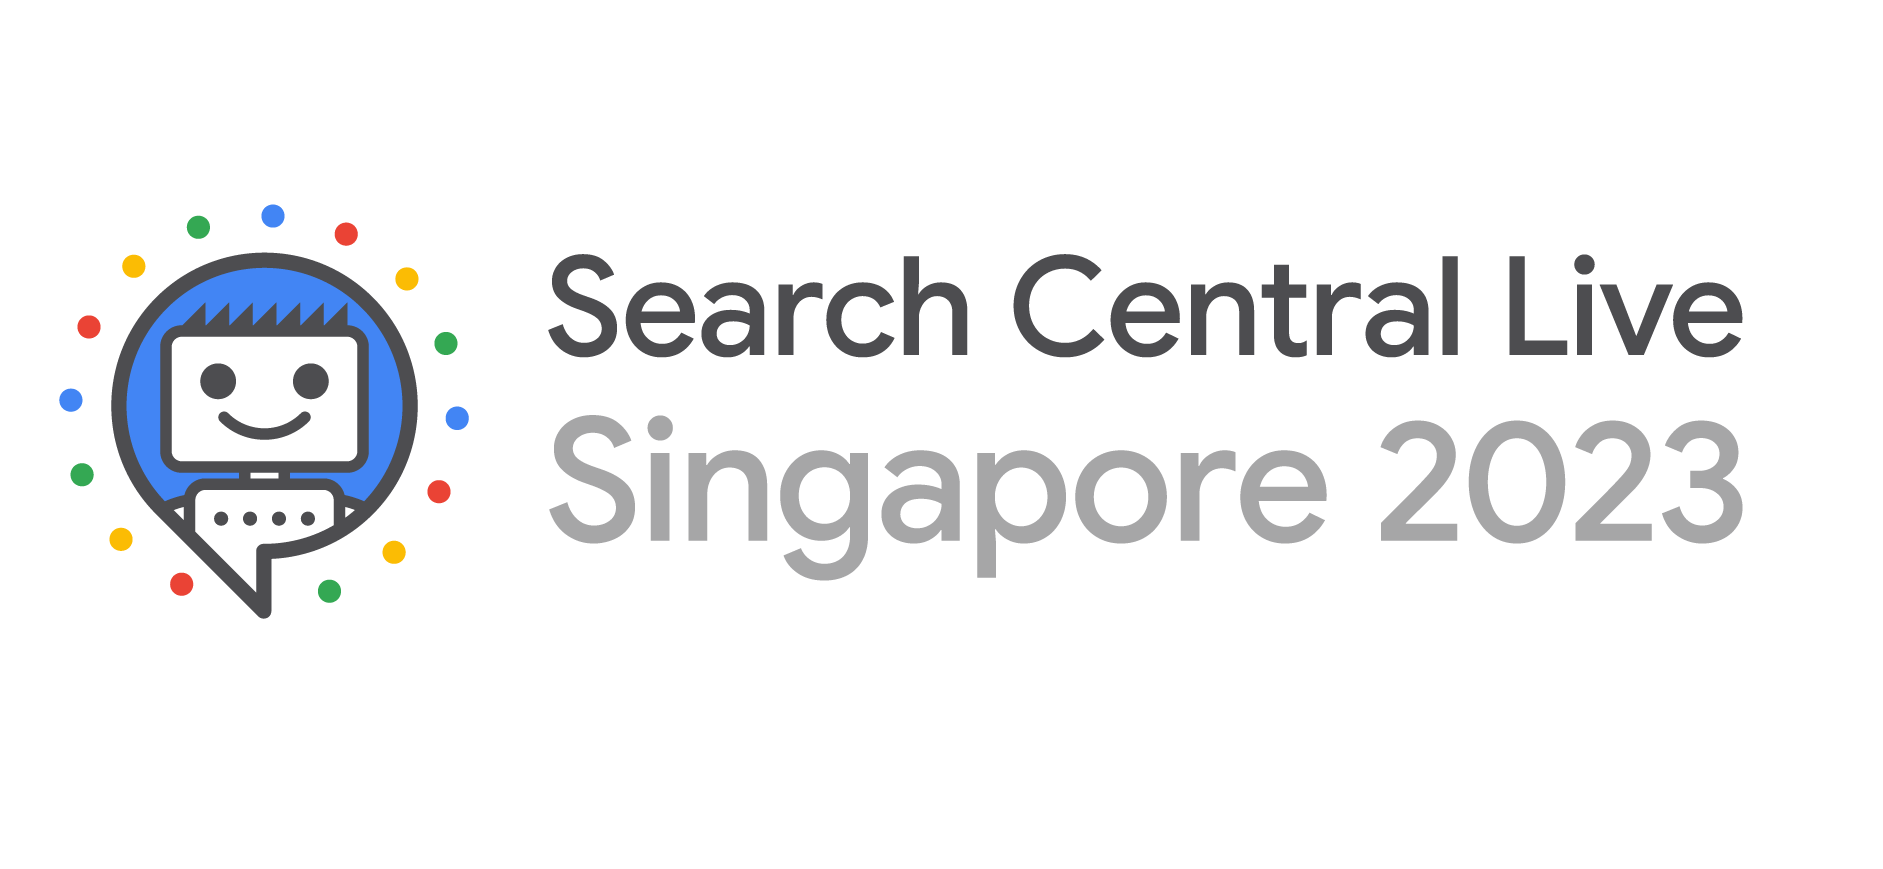 Arama Merkezi Canlı Singapur 2023 Logosu